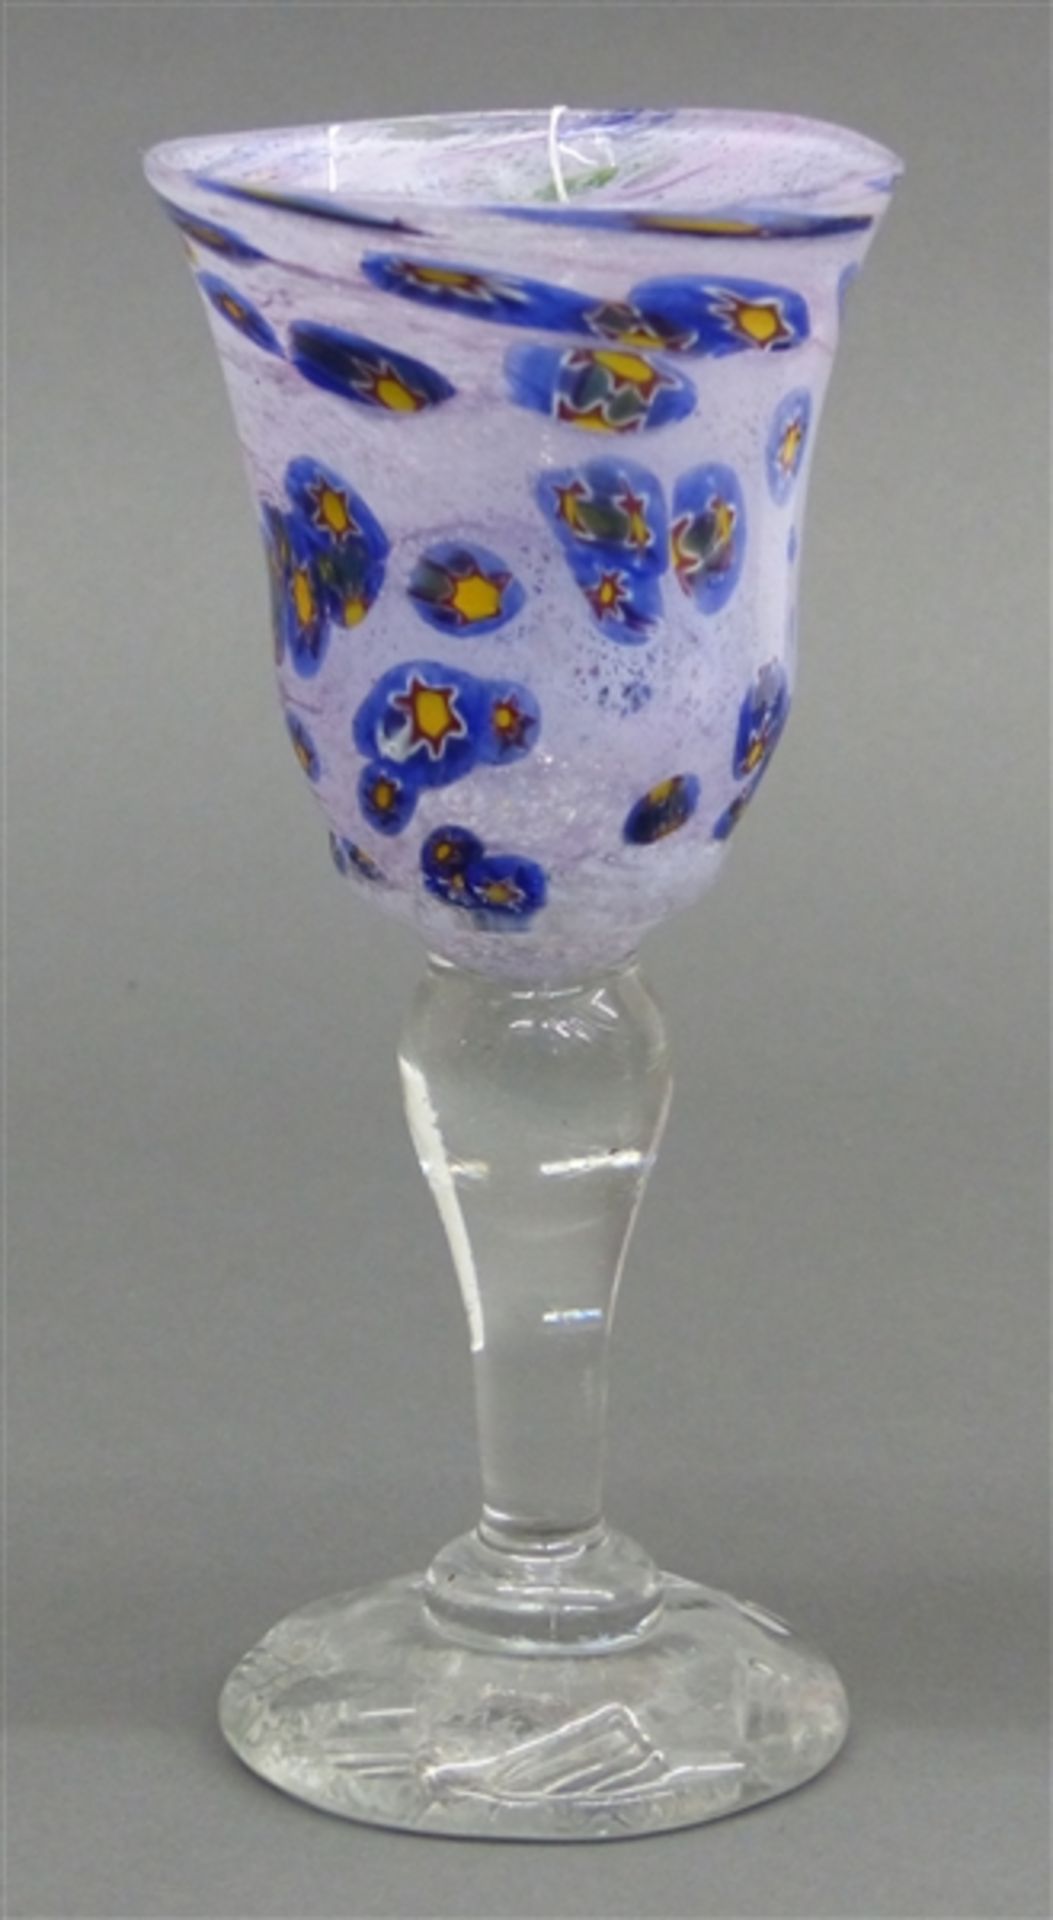 Glasbecher farbloser Fuß. Kuppa mit bunten Glaseinschmelzungen, signiert, datiert 4.6.1981, h 20,5